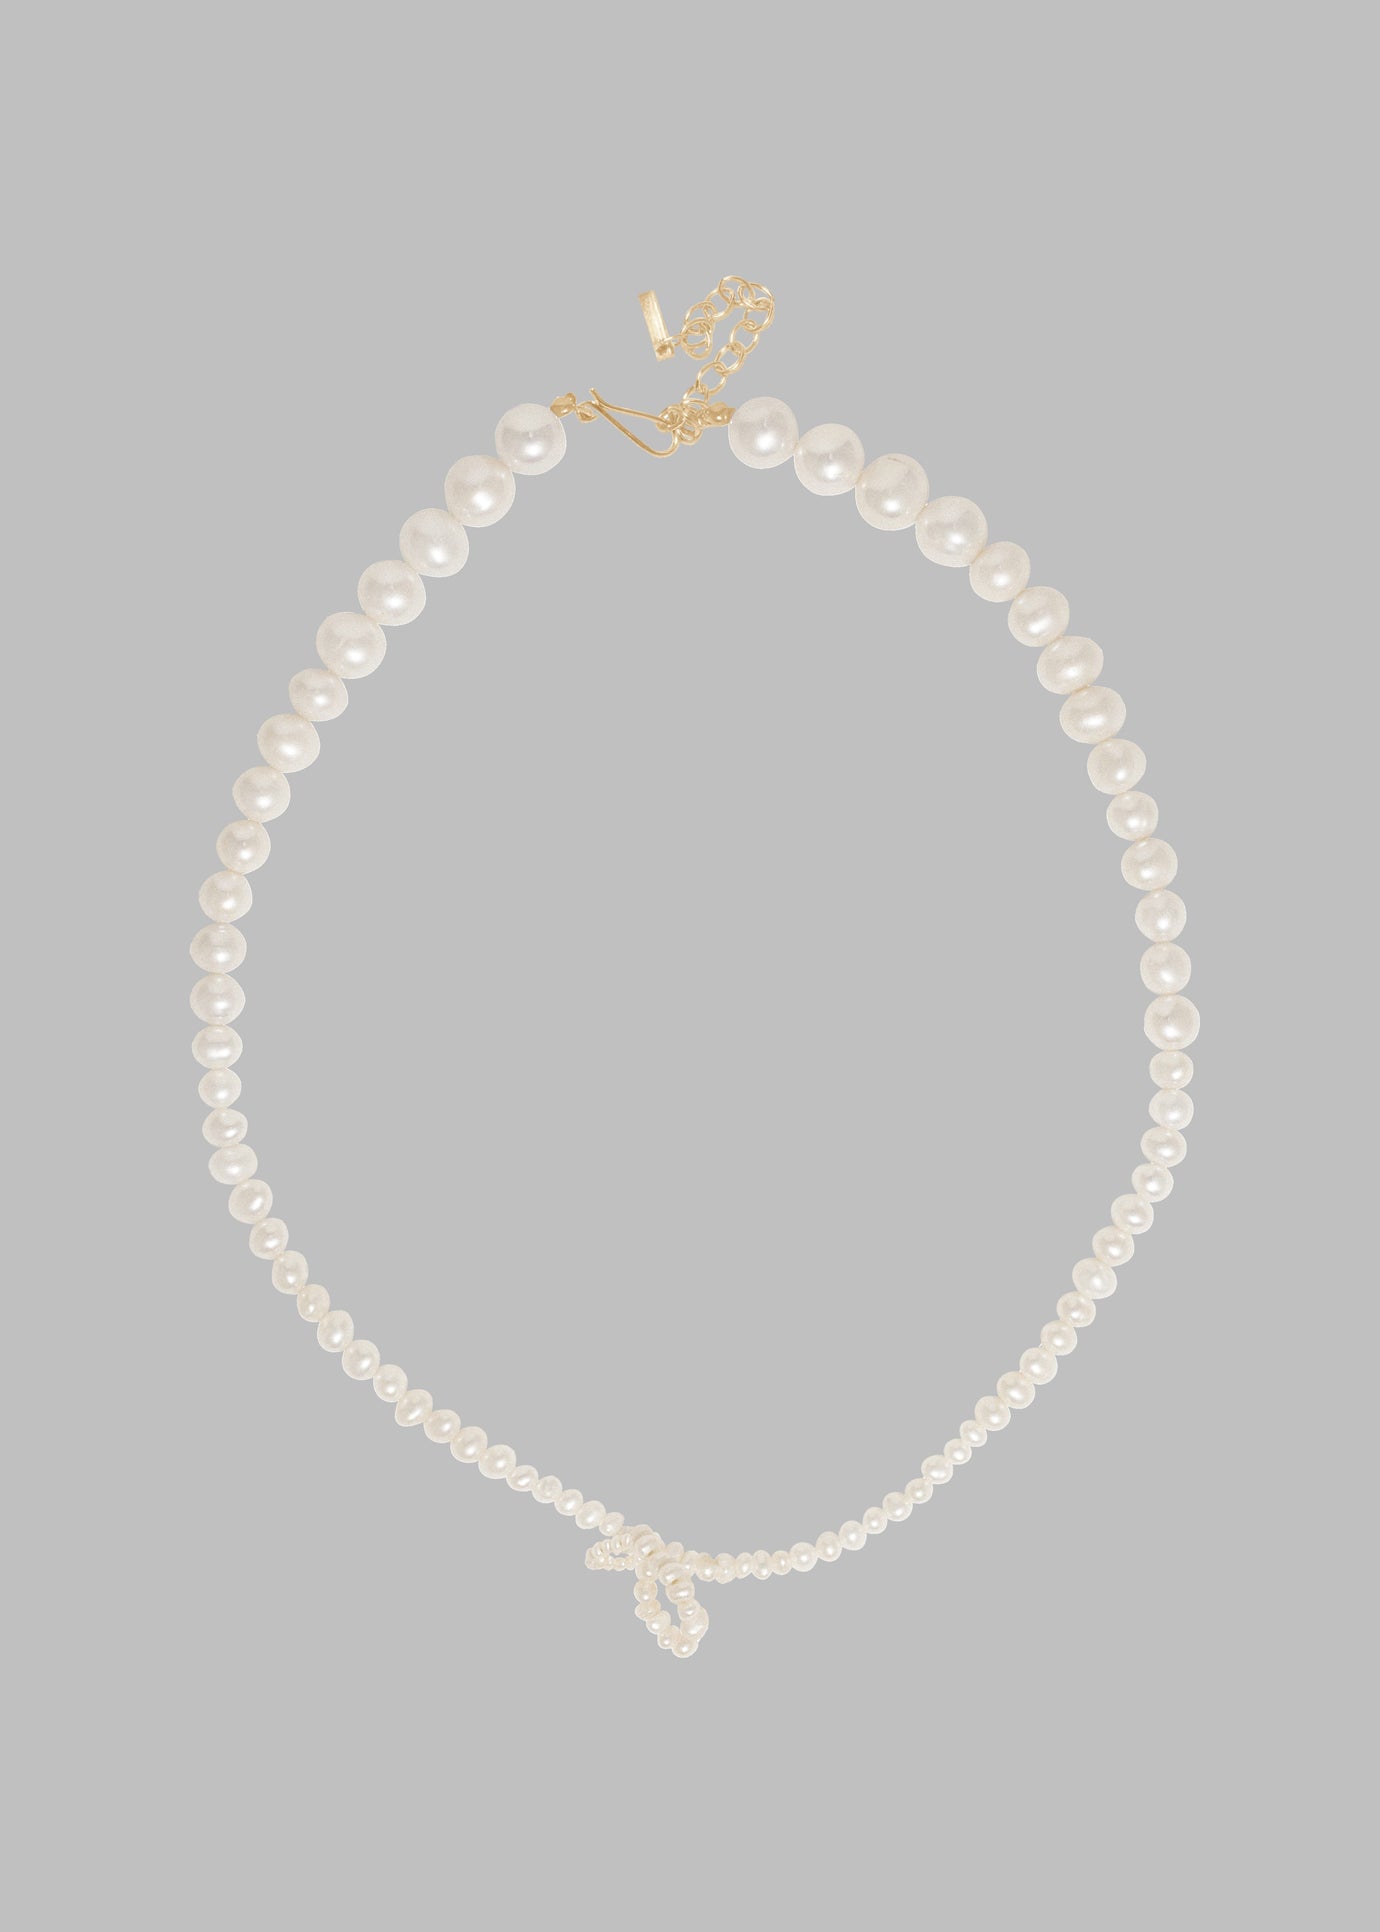 Completedworks Loop-The-Loop Necklace - Pearl/Gold Vermeil